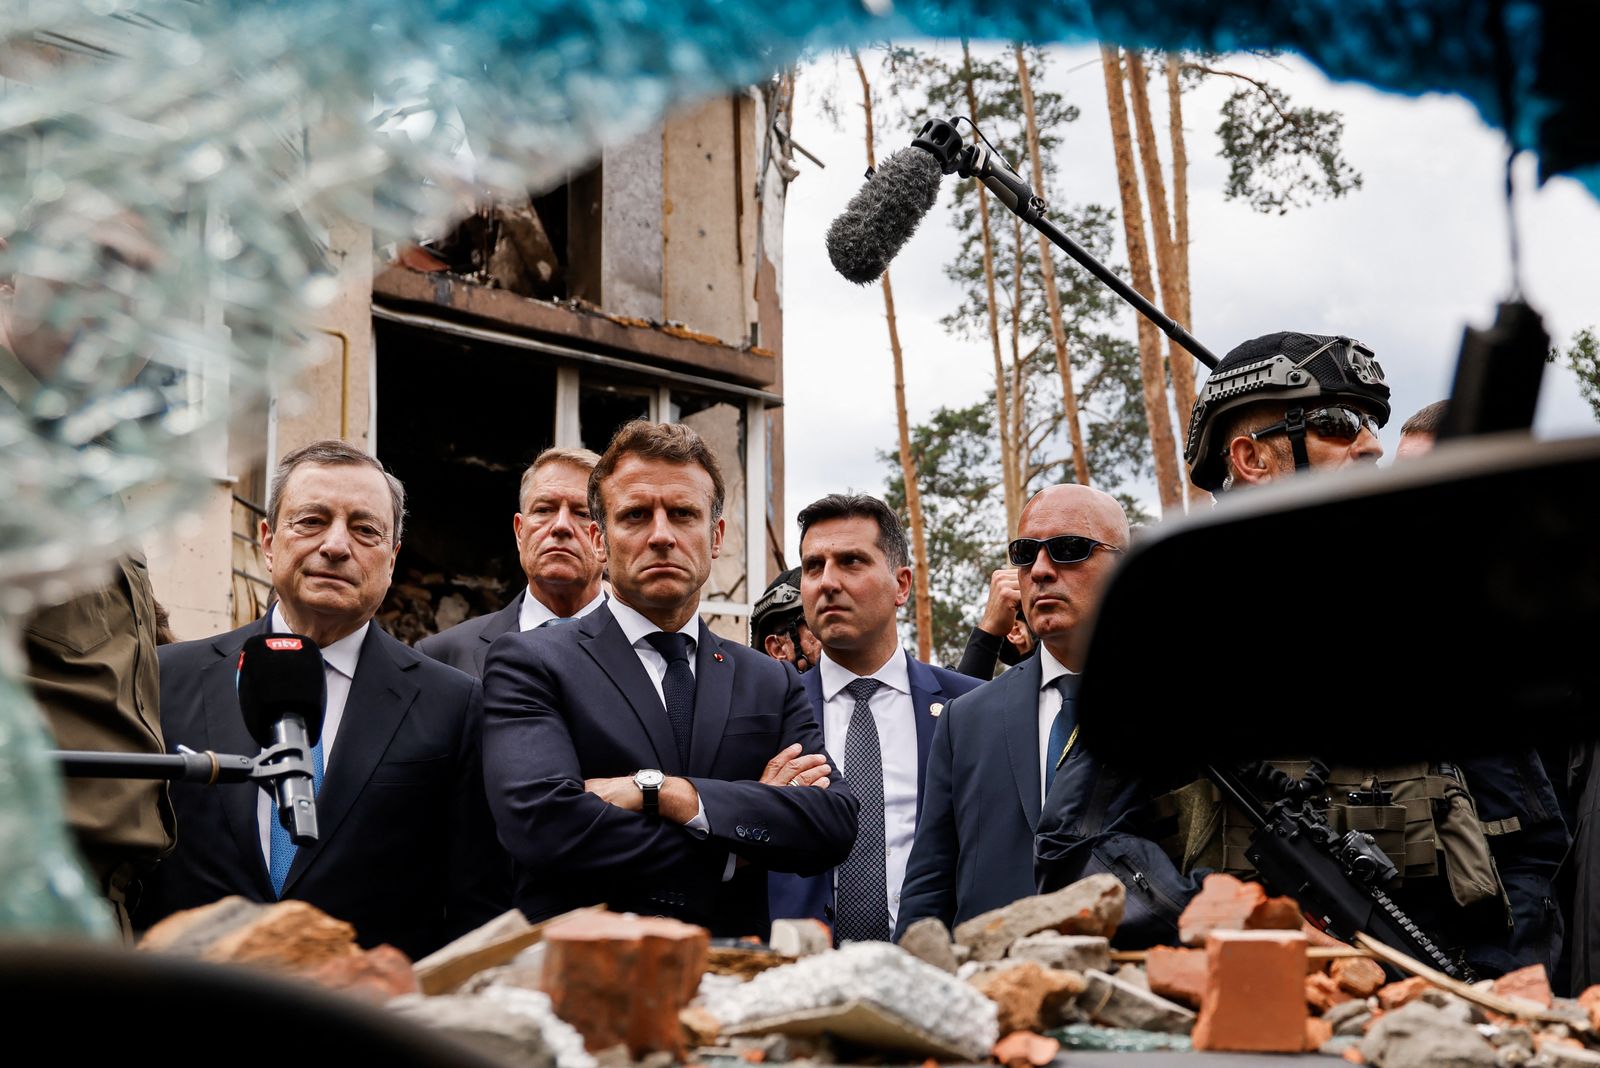 رئيس الوزراء الإيطالي ماريو دراجي (يسار) والرئيس الفرنسي إيمانويل ماكرون (وسط) وخلفه الرئيس الروماني كلاوس يوهانيس  بينما لا يظهر المستشار الألماني أولاف شولتز ينظرون إلى آثار القصف الروسي في زيارة إلى ضاحية إربين بالعاصمة الأوكرانية كييف. 16 يونيو 2022 - AFP